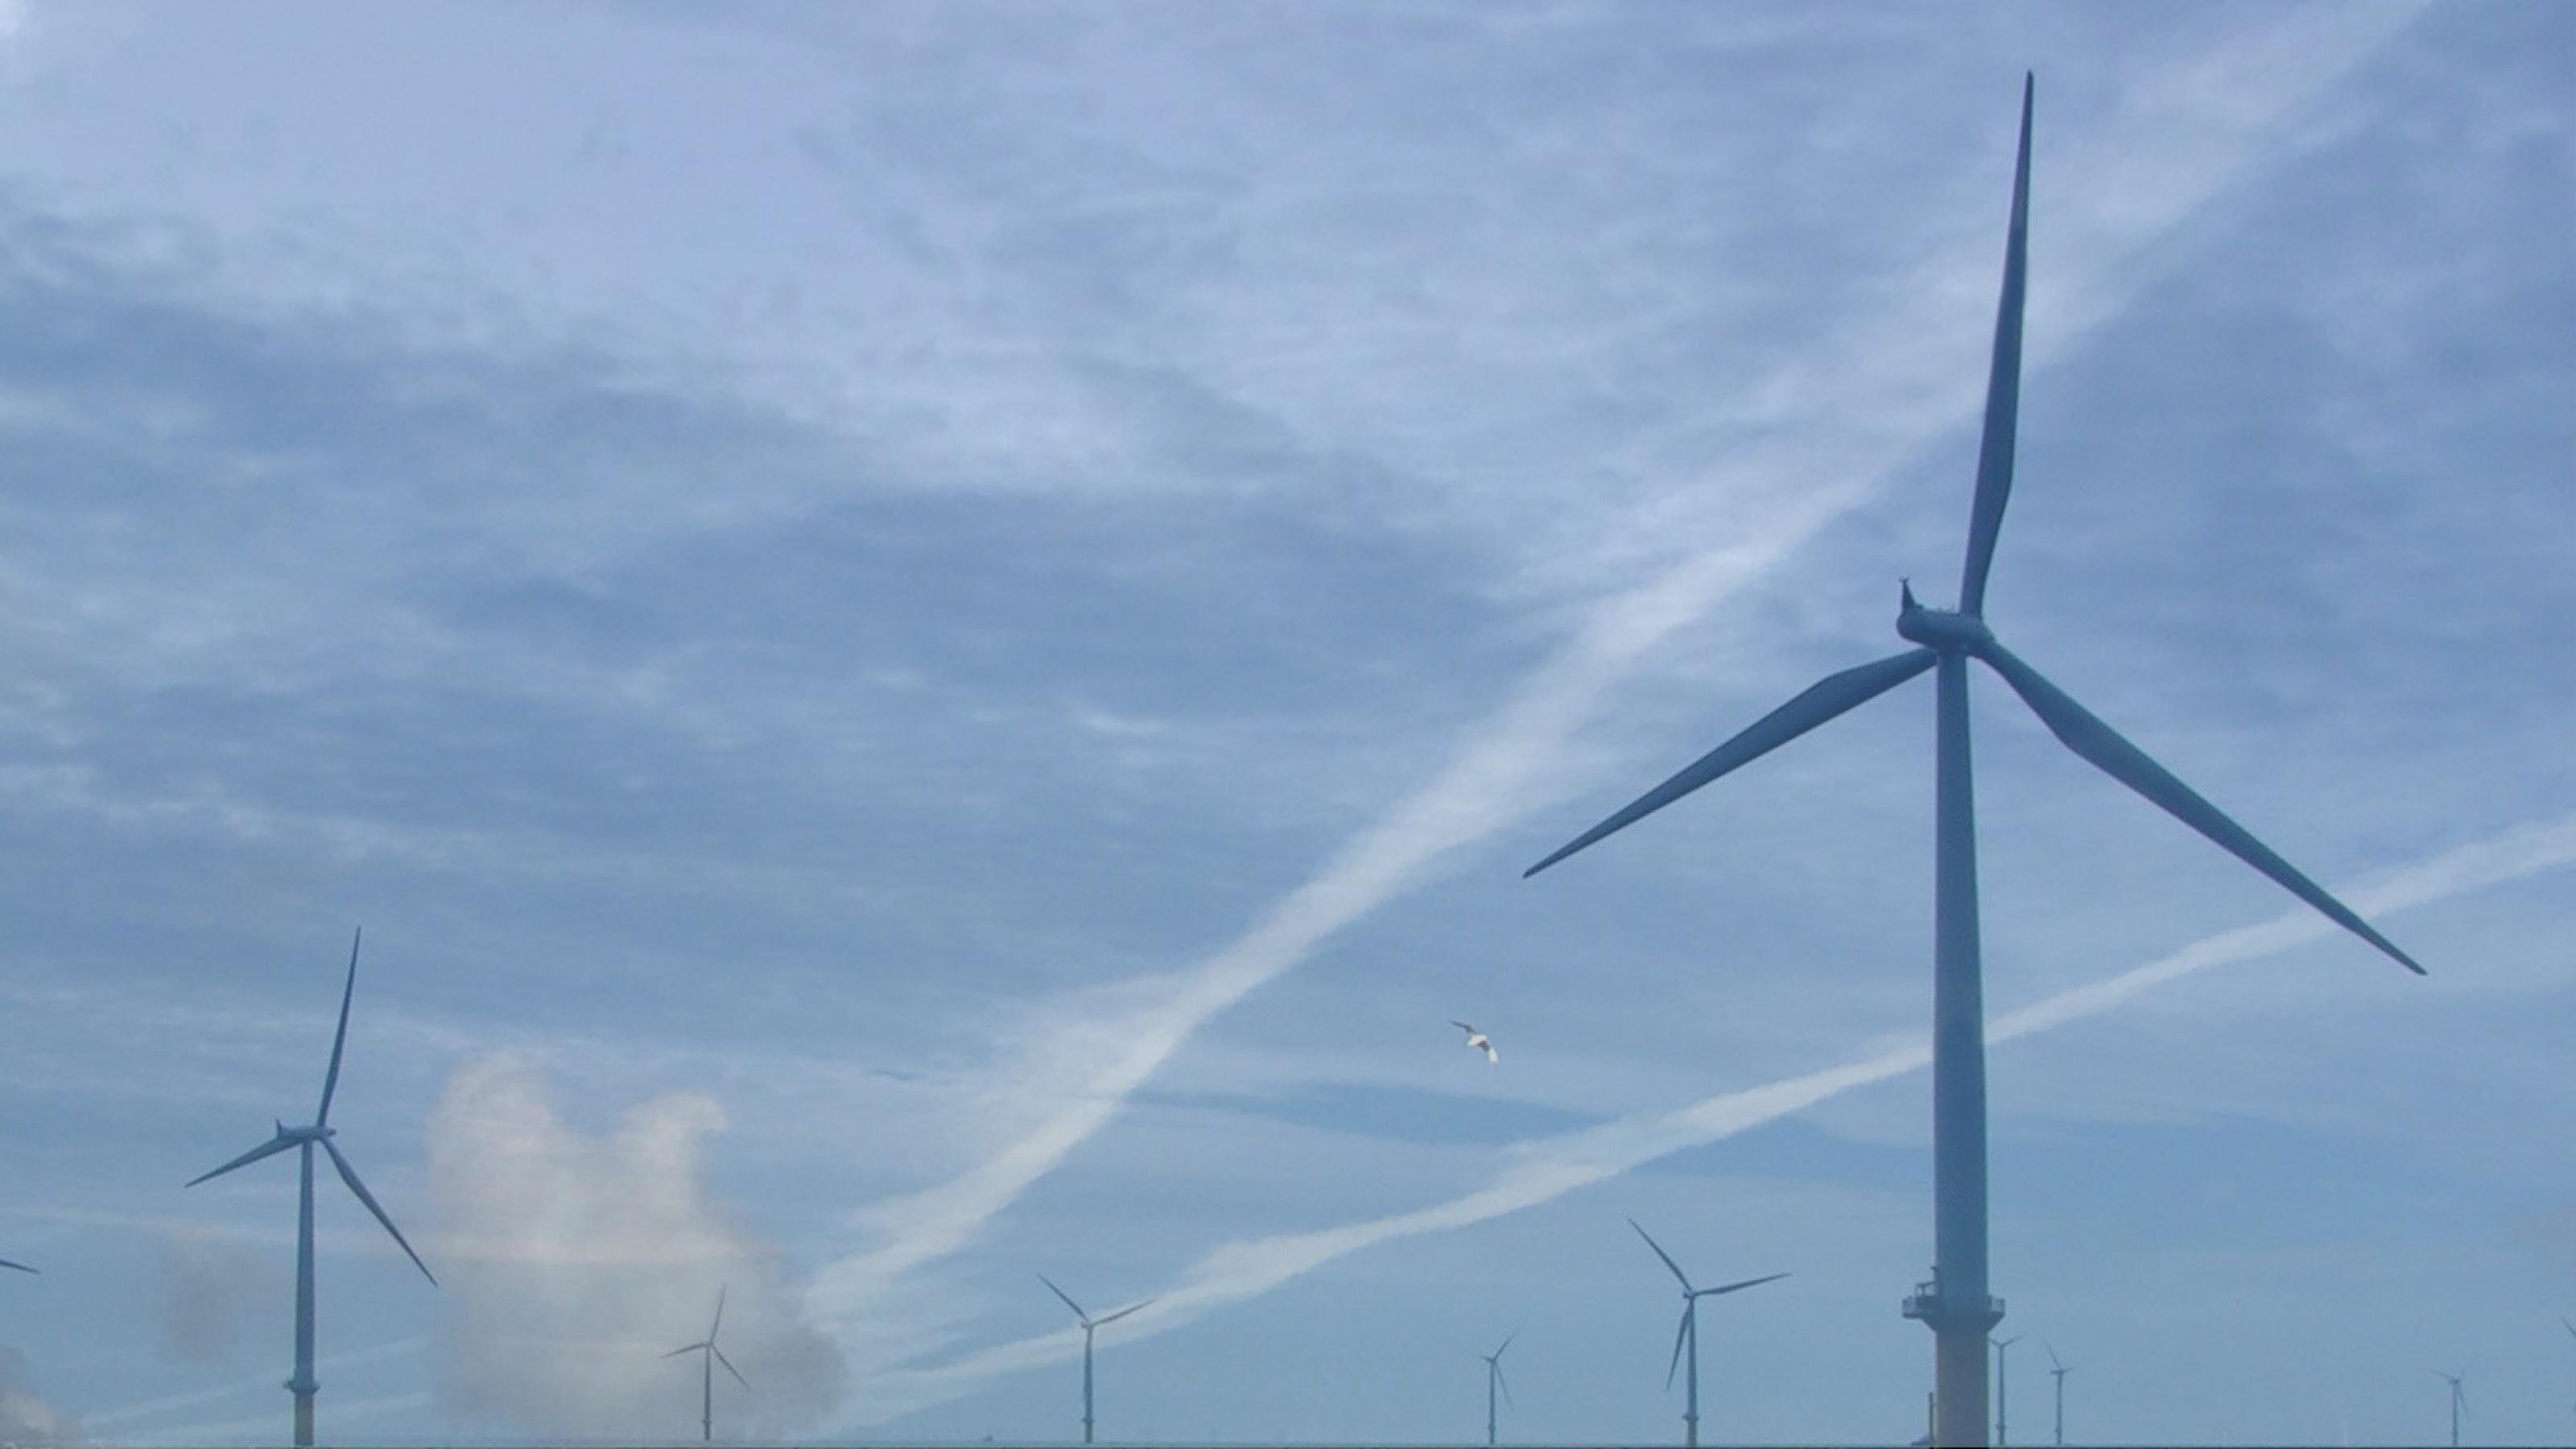 Ein Blick in den blauen Himmel, dort sieht man Kondensstreifen hinter Windrädern. Fotos und Montage: Christopher Schrader